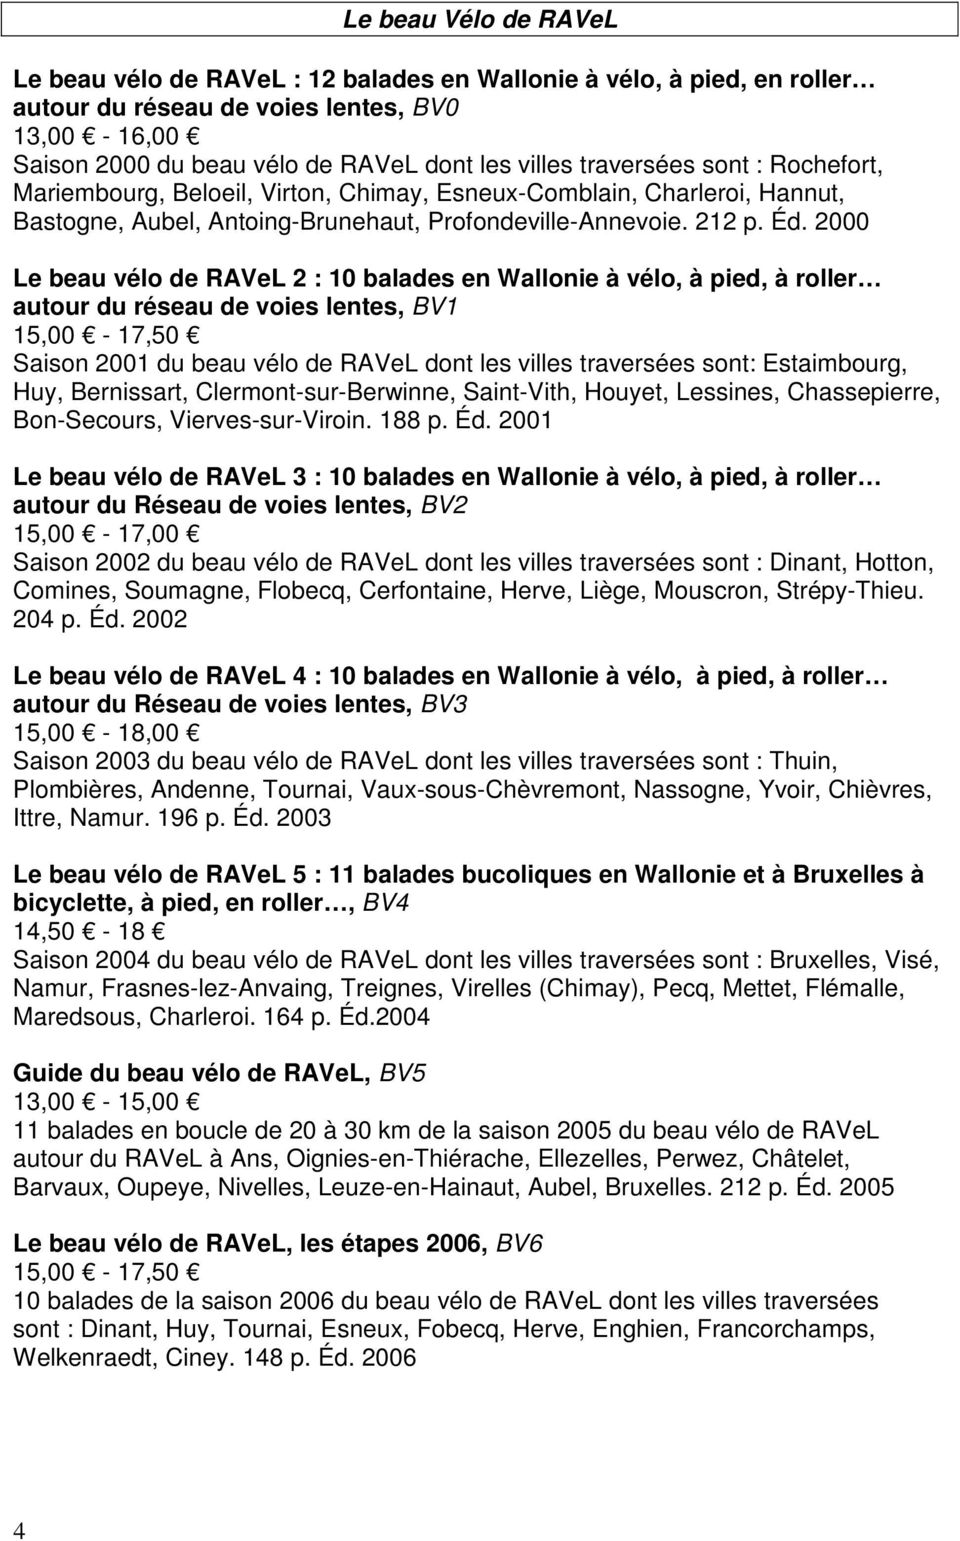 2000 Le beau vélo de RAVeL 2 : 10 balades en Wallonie à vélo, à pied, à roller autour du réseau de voies lentes, BV1 15,00-17,50 Saison 2001 du beau vélo de RAVeL dont les villes traversées sont: